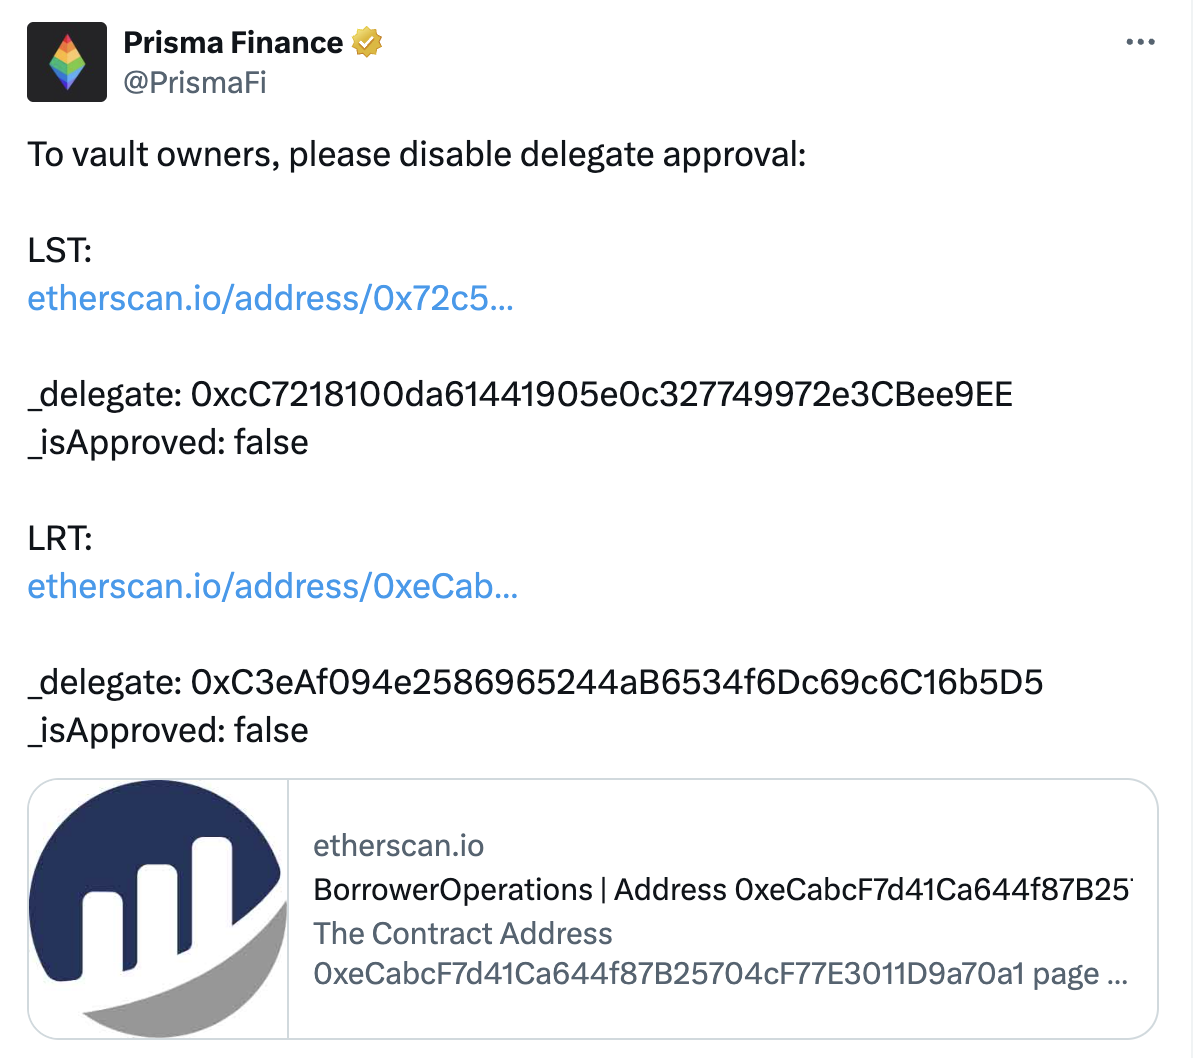 Prisma Finance提醒金库所有者禁用代理批准功能